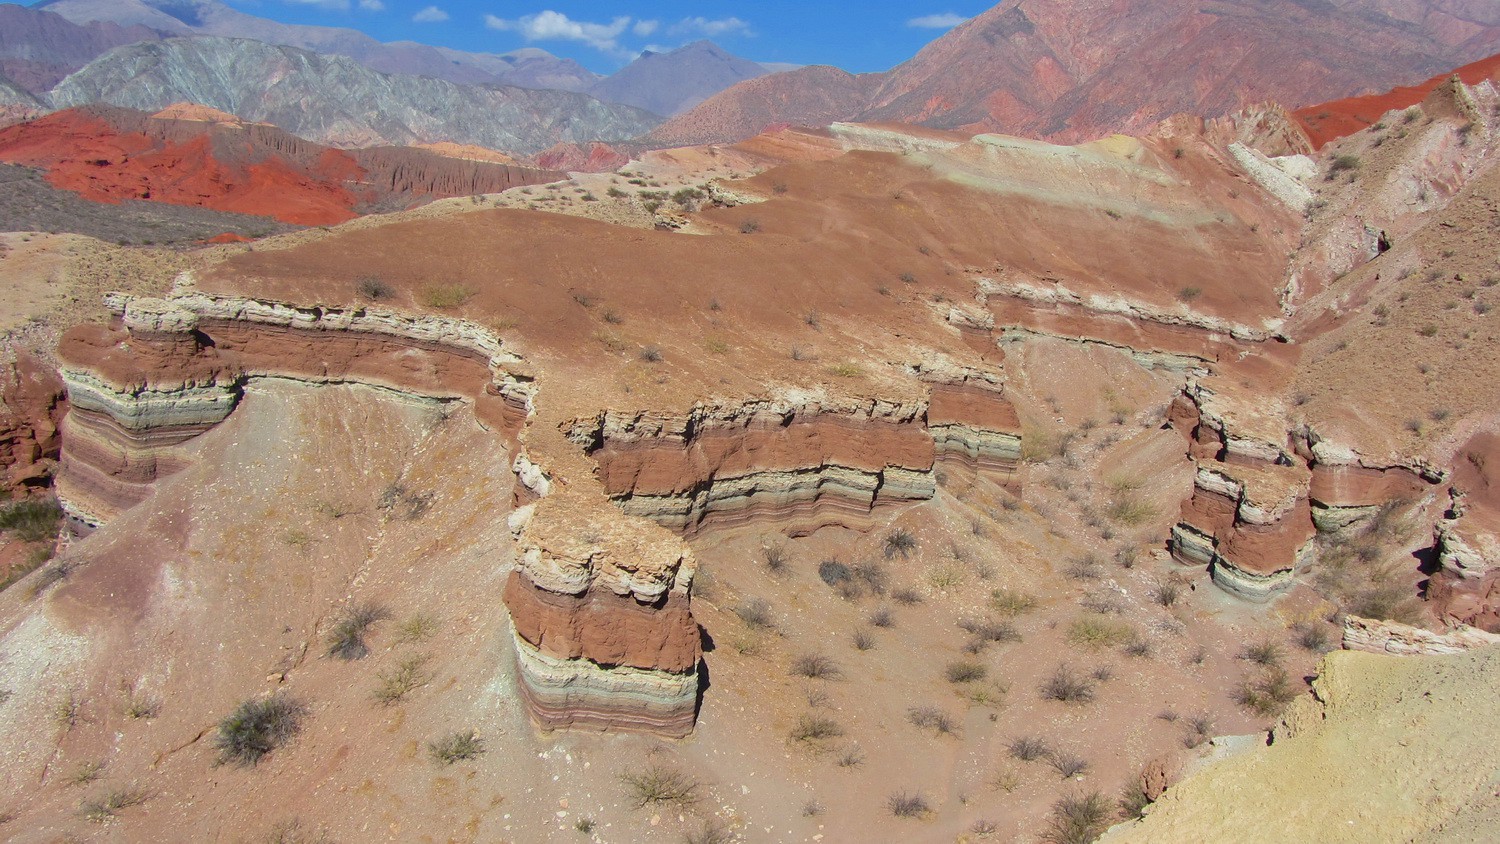 Gorges of the Quebrada de las Conchas